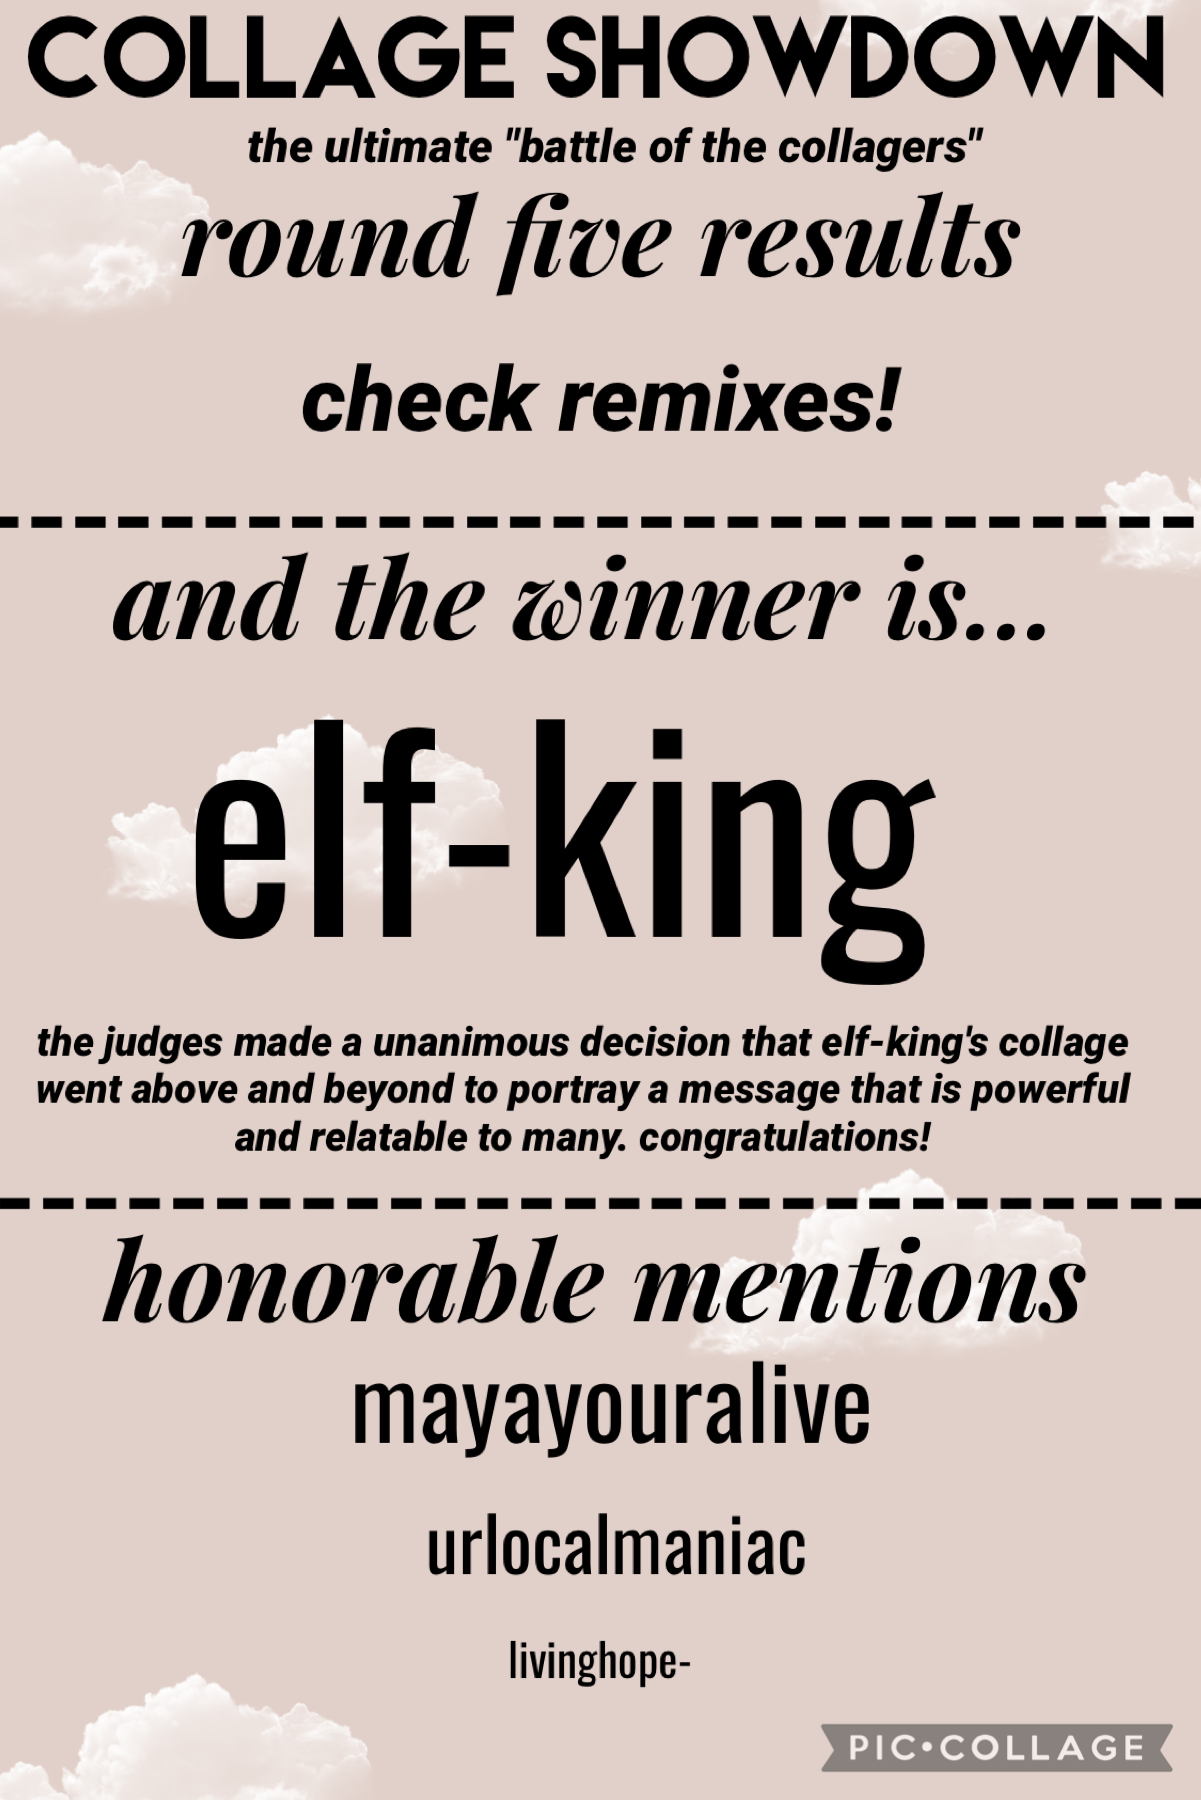 Congrats @elf-king